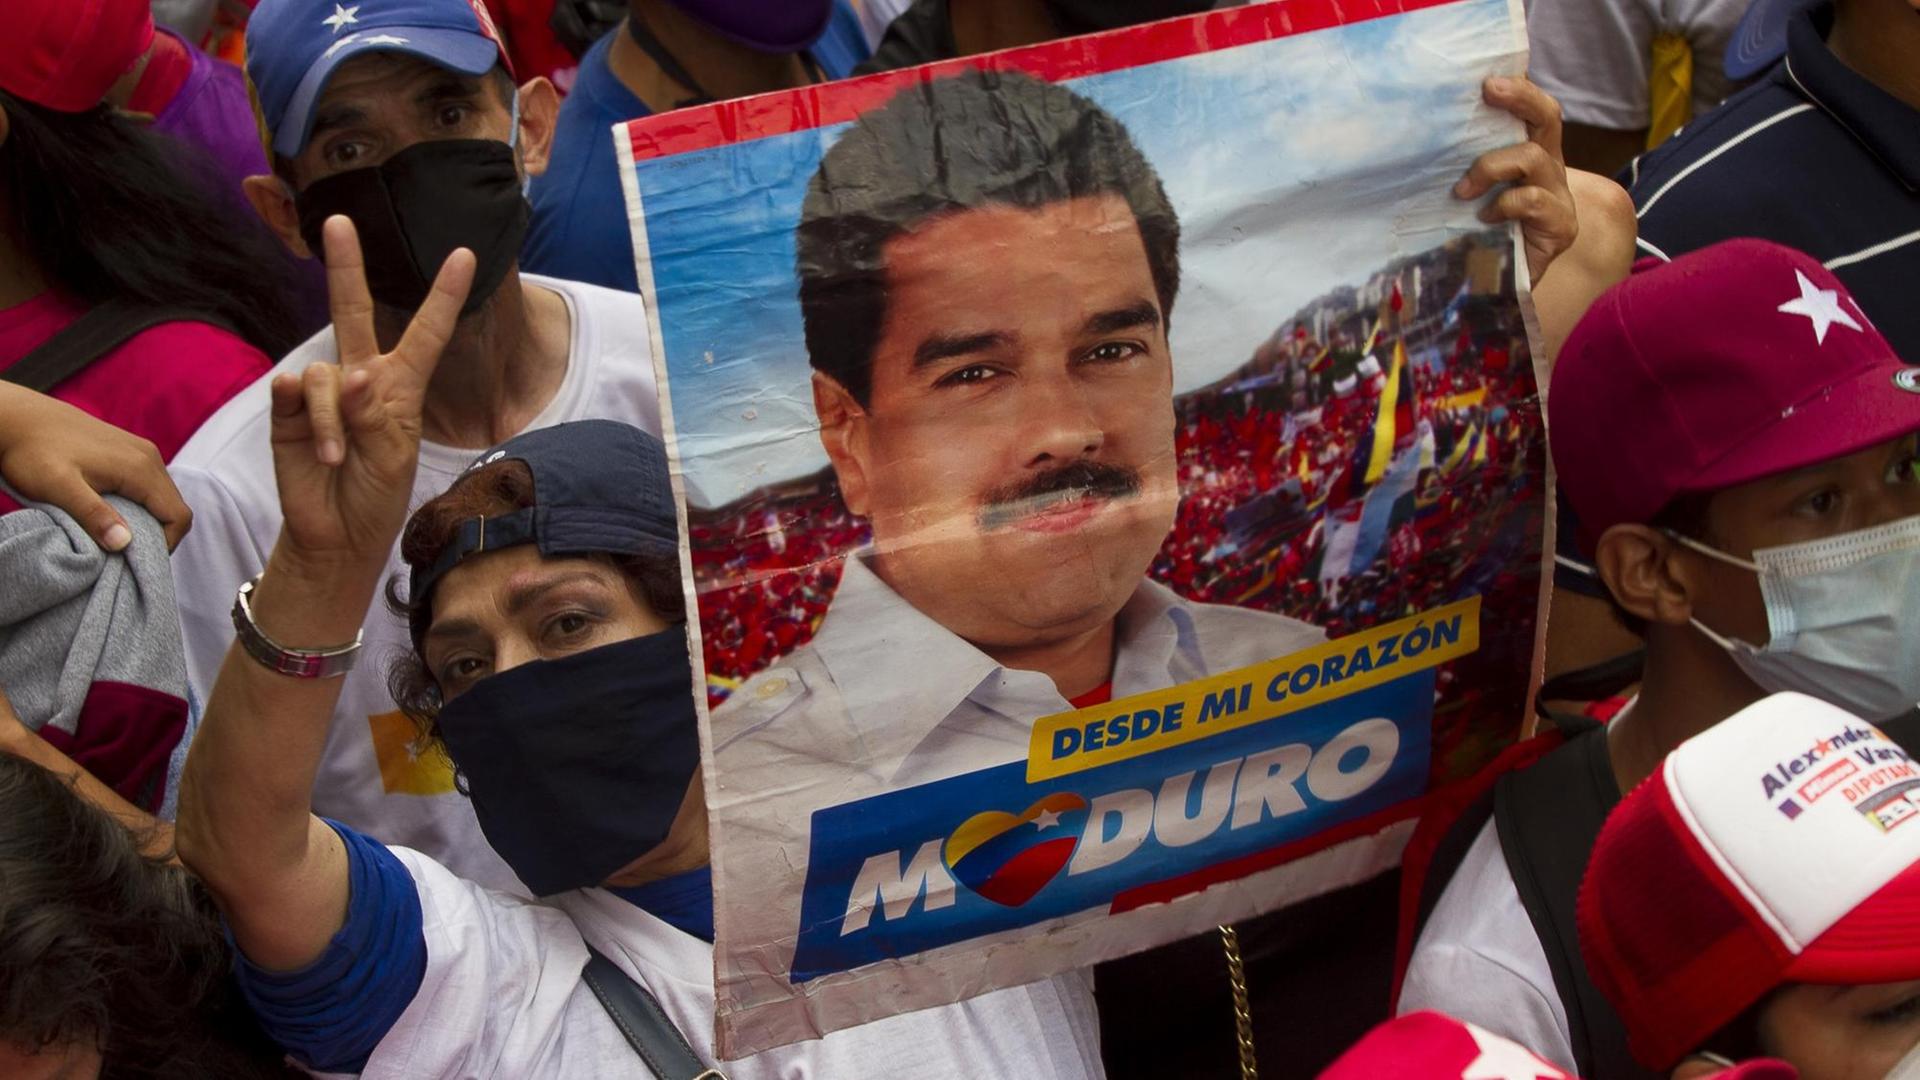 Eine Unterstützerin des venezolanischen Präsidenten Maduro hält während einer Abschlusskundgebung ein Schild mit seinem Gesicht darauf. Am 6. Dezember soll eine umstrittene Parlamentswahl in dem politisch tief gespaltenen südamerikanischen Land stattfinden. Große Teile der Opposition befürchten Wahlbetrug und wollen die Abstimmung deshalb boykottieren.